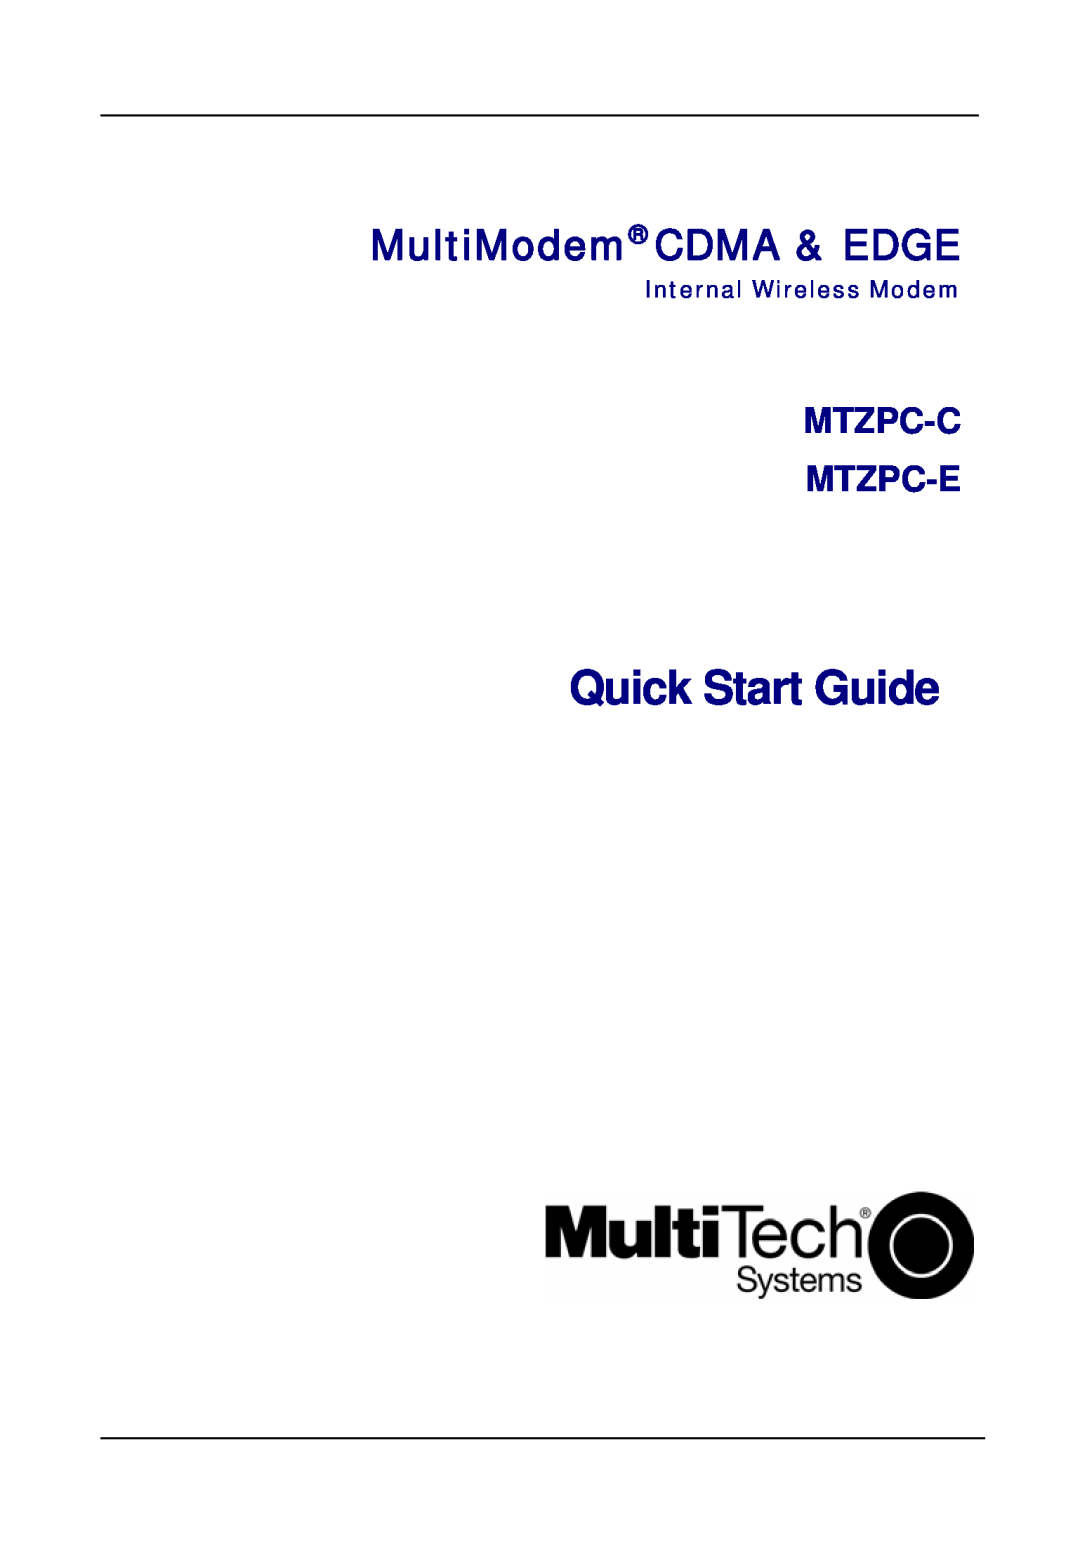 Multi-Tech Systems MTZPC-C quick start Quick Start Guide, MultiModem CDMA & EDGE, Mtzpc-C Mtzpc-E 